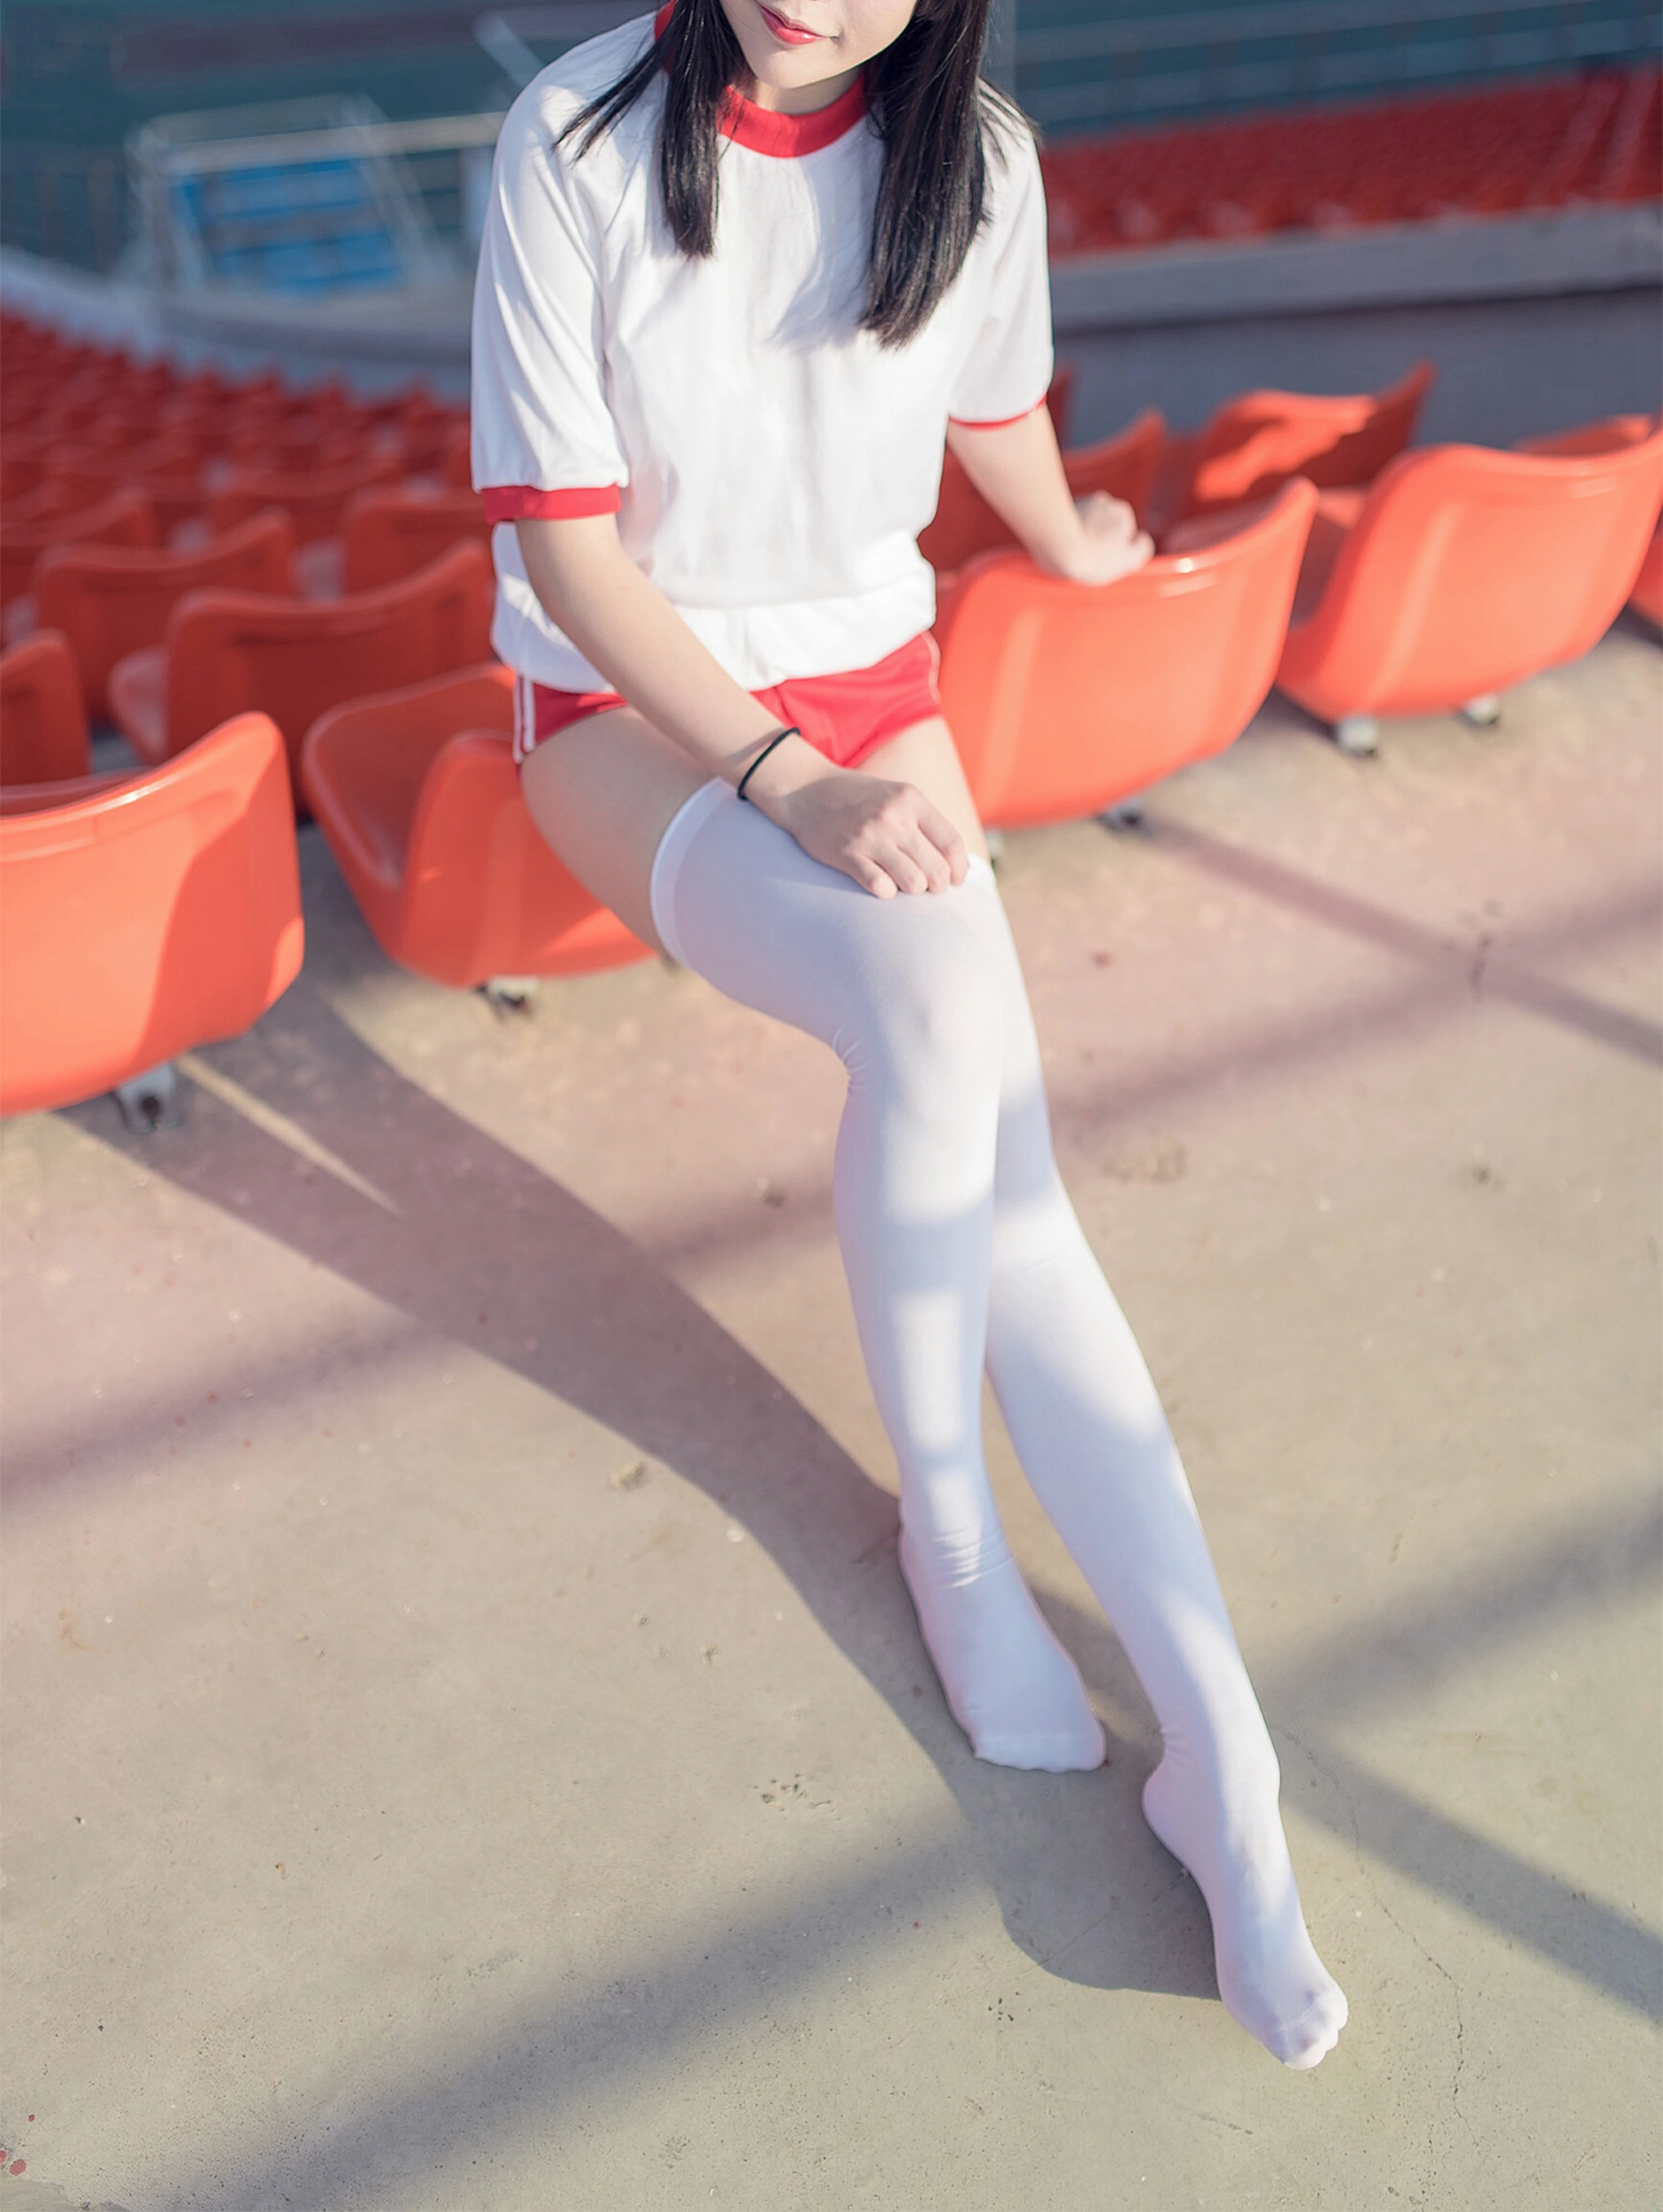 [风之领域]NO.112 性感小萝莉 白色短袖与红色短裤加白色丝袜美腿私房写真集,